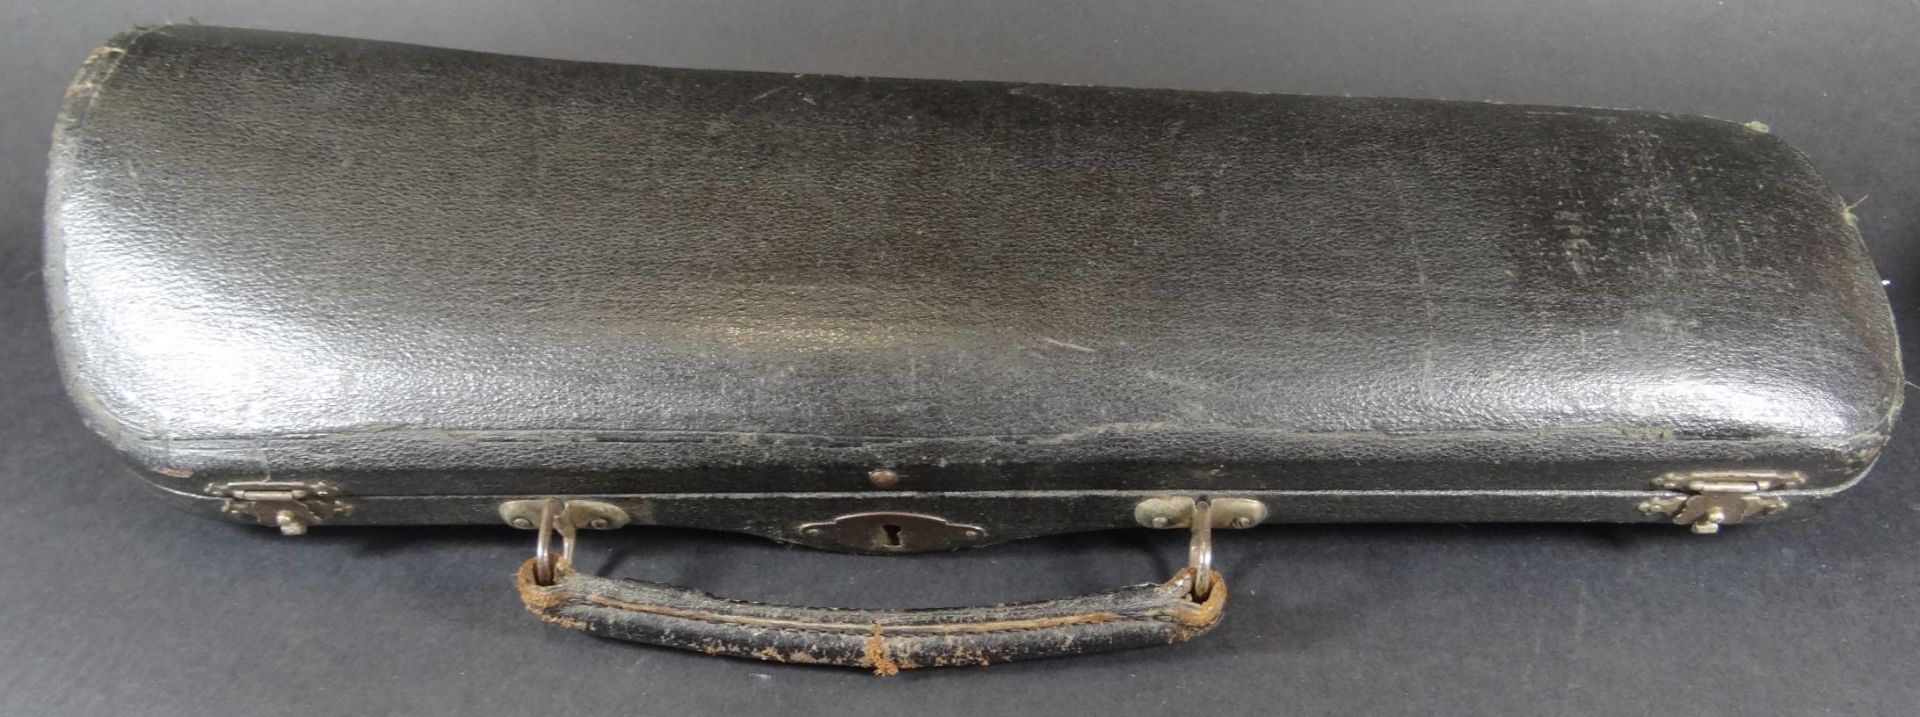 alte B- Klarinette in Koffer, Klarinette L-66 cm, Alters-u. Gebrauchsspuren, undeutl. Hersteller,- - - Bild 2 aus 9